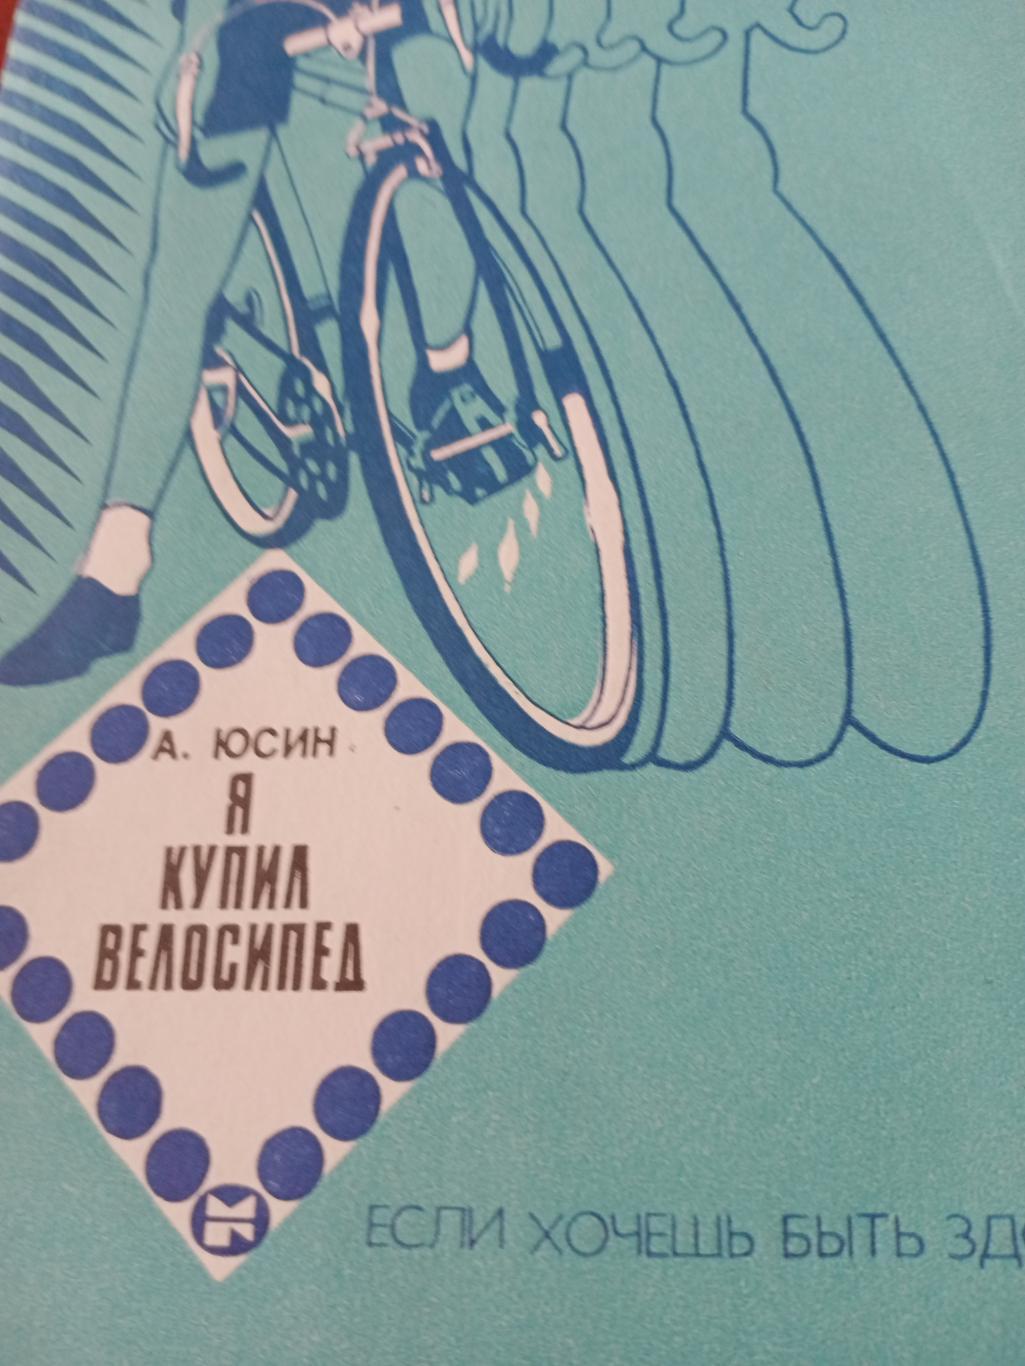 А.Юсин. Я купил велосипед. Москва, 1984 г